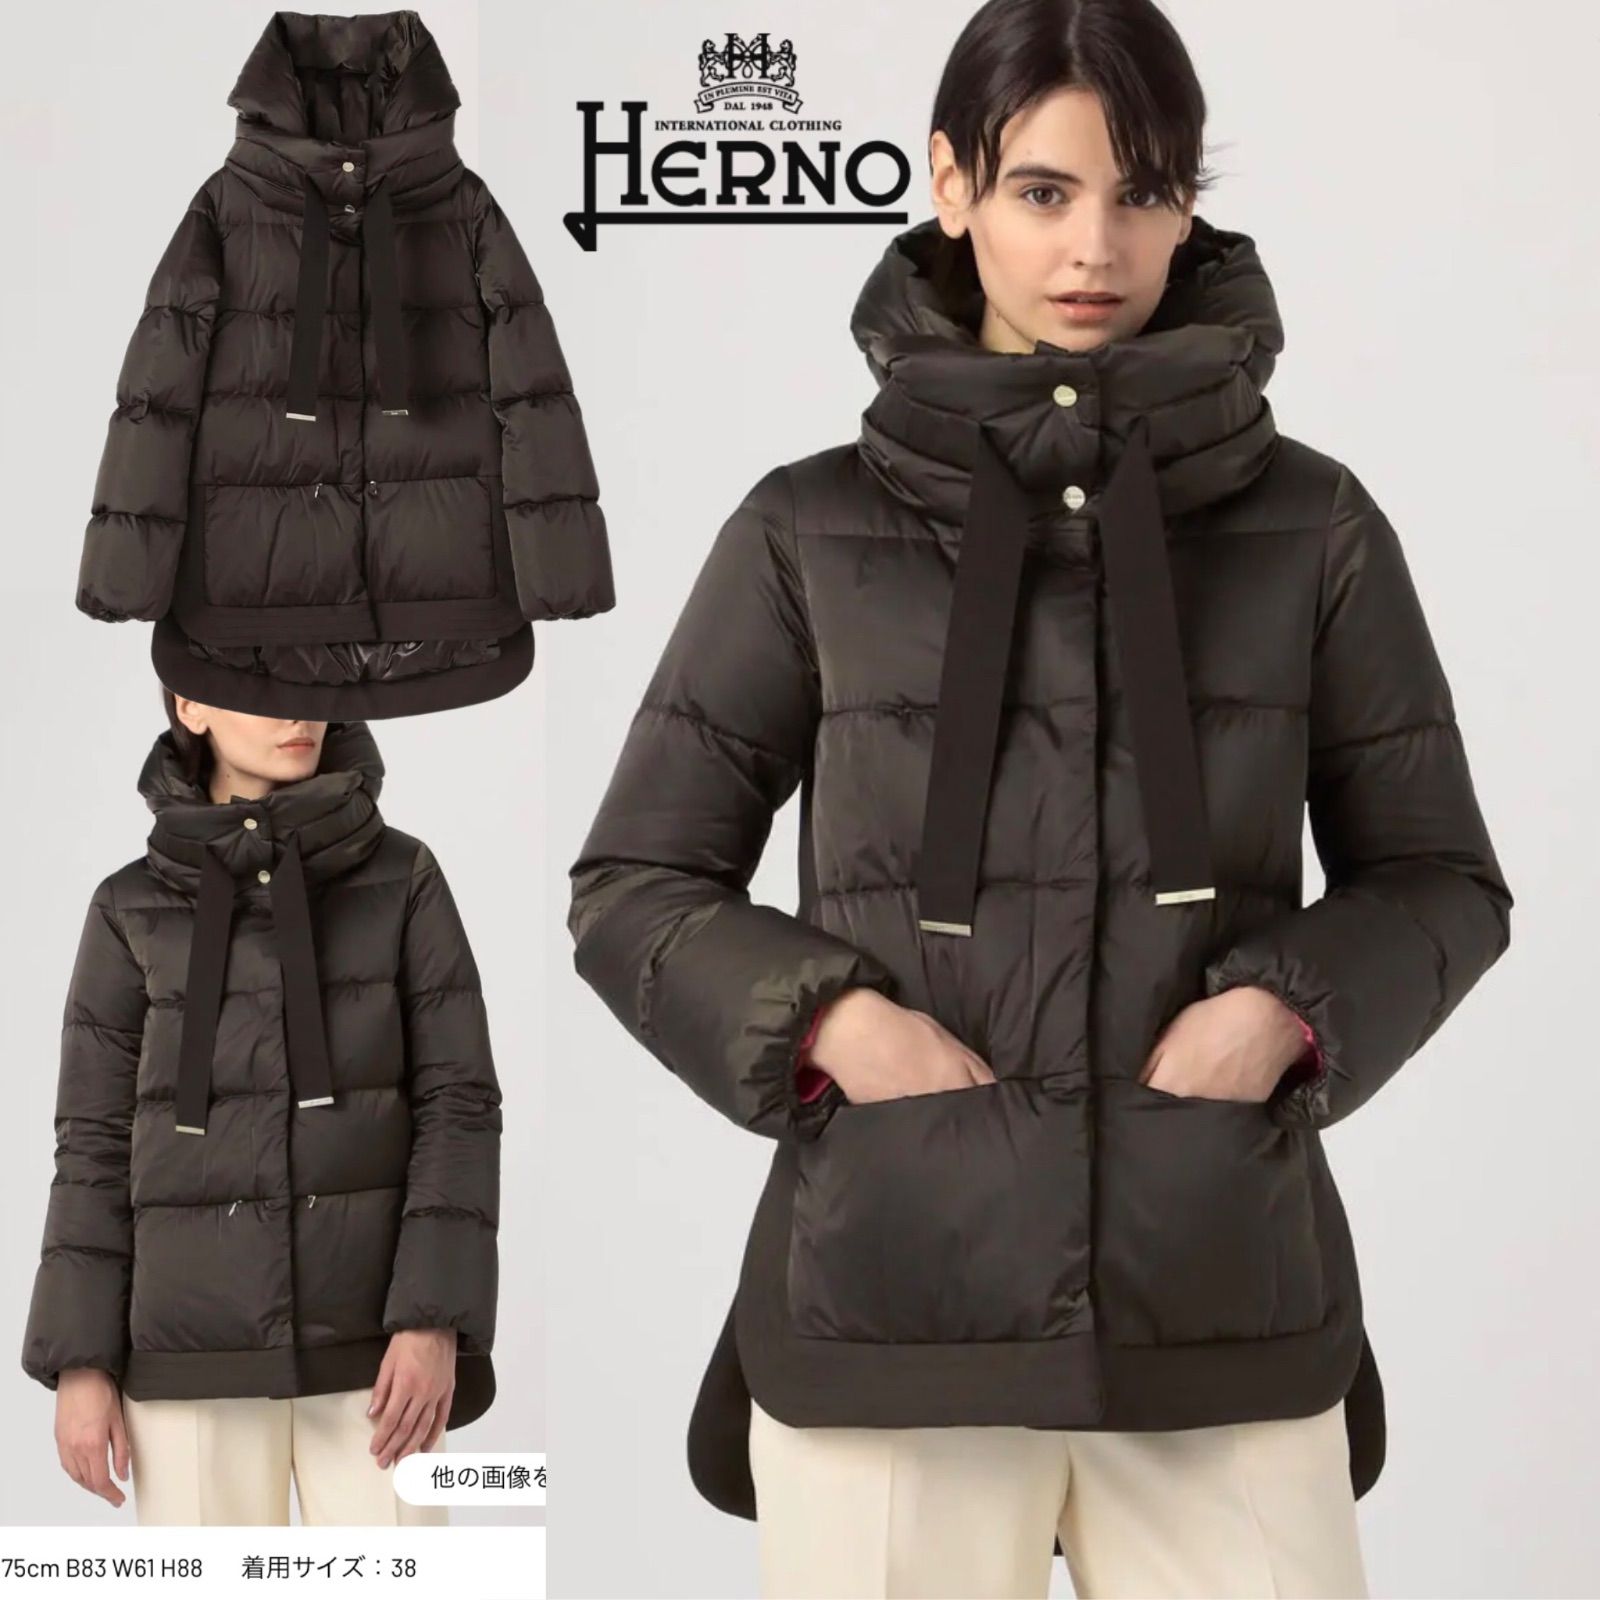 HERNO(ヘルノ) PI001556D SATIN & CITY GLAMOUR コート Black